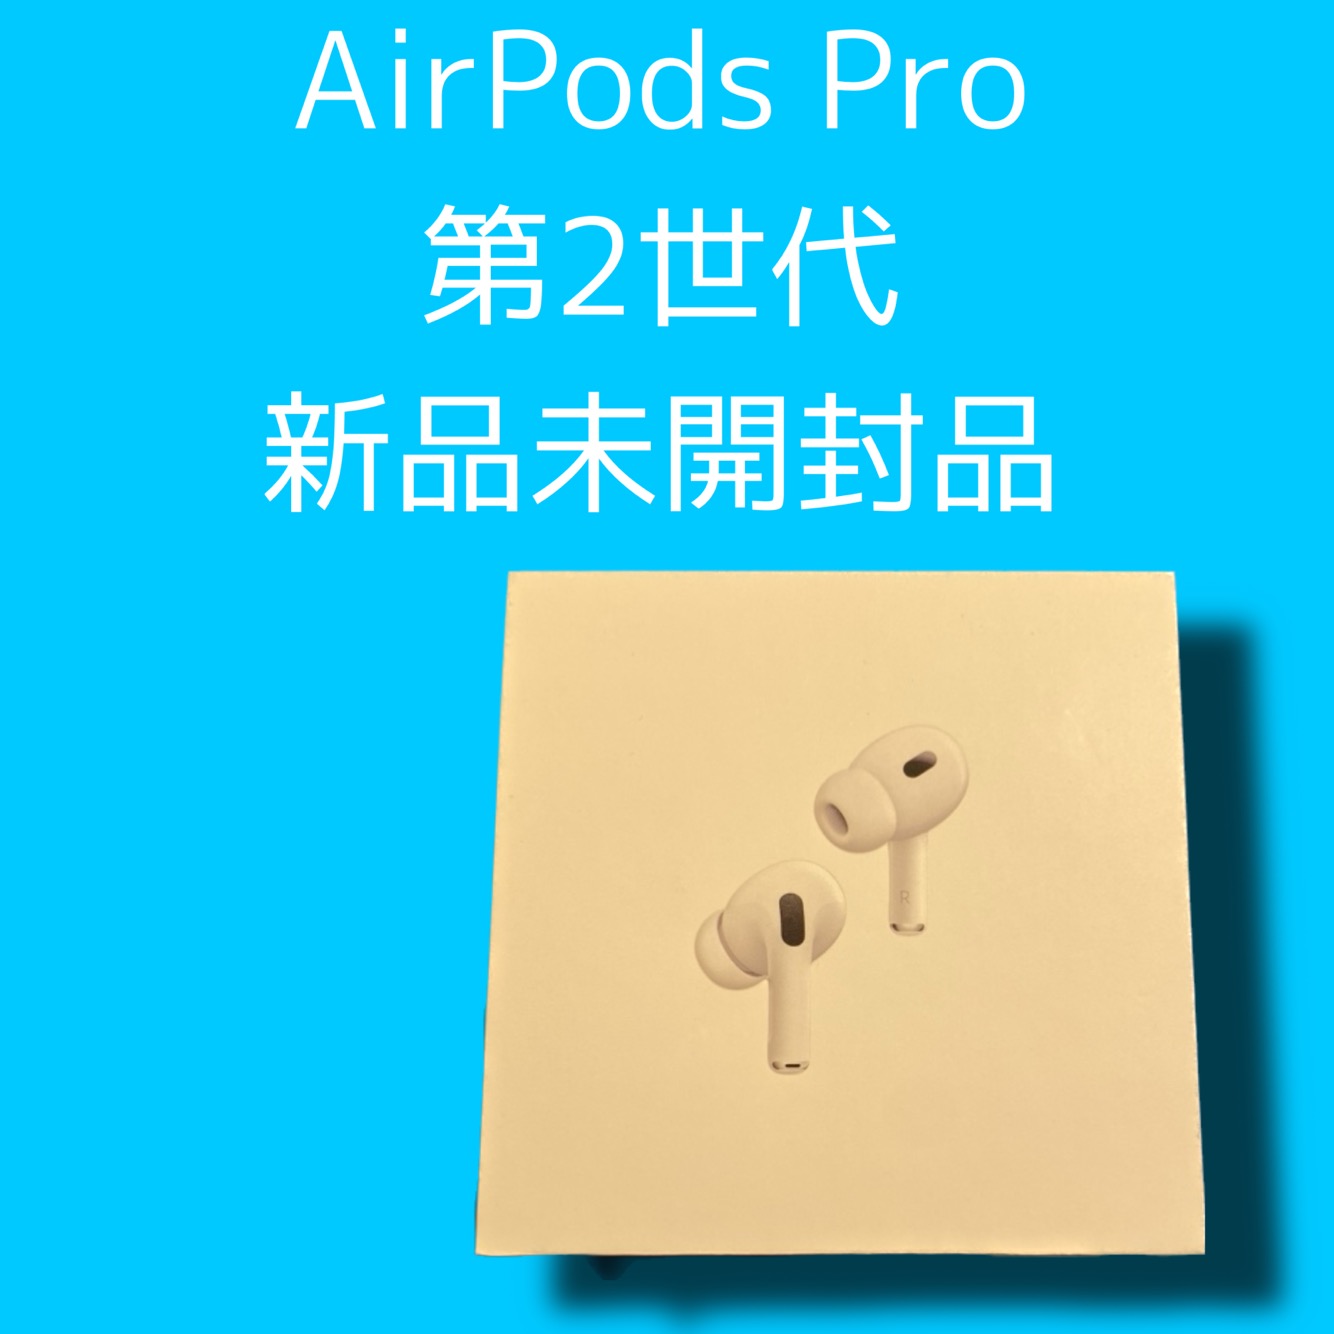 AirPods Pro(第２世代) ・新品未開封品【天神地下街店】